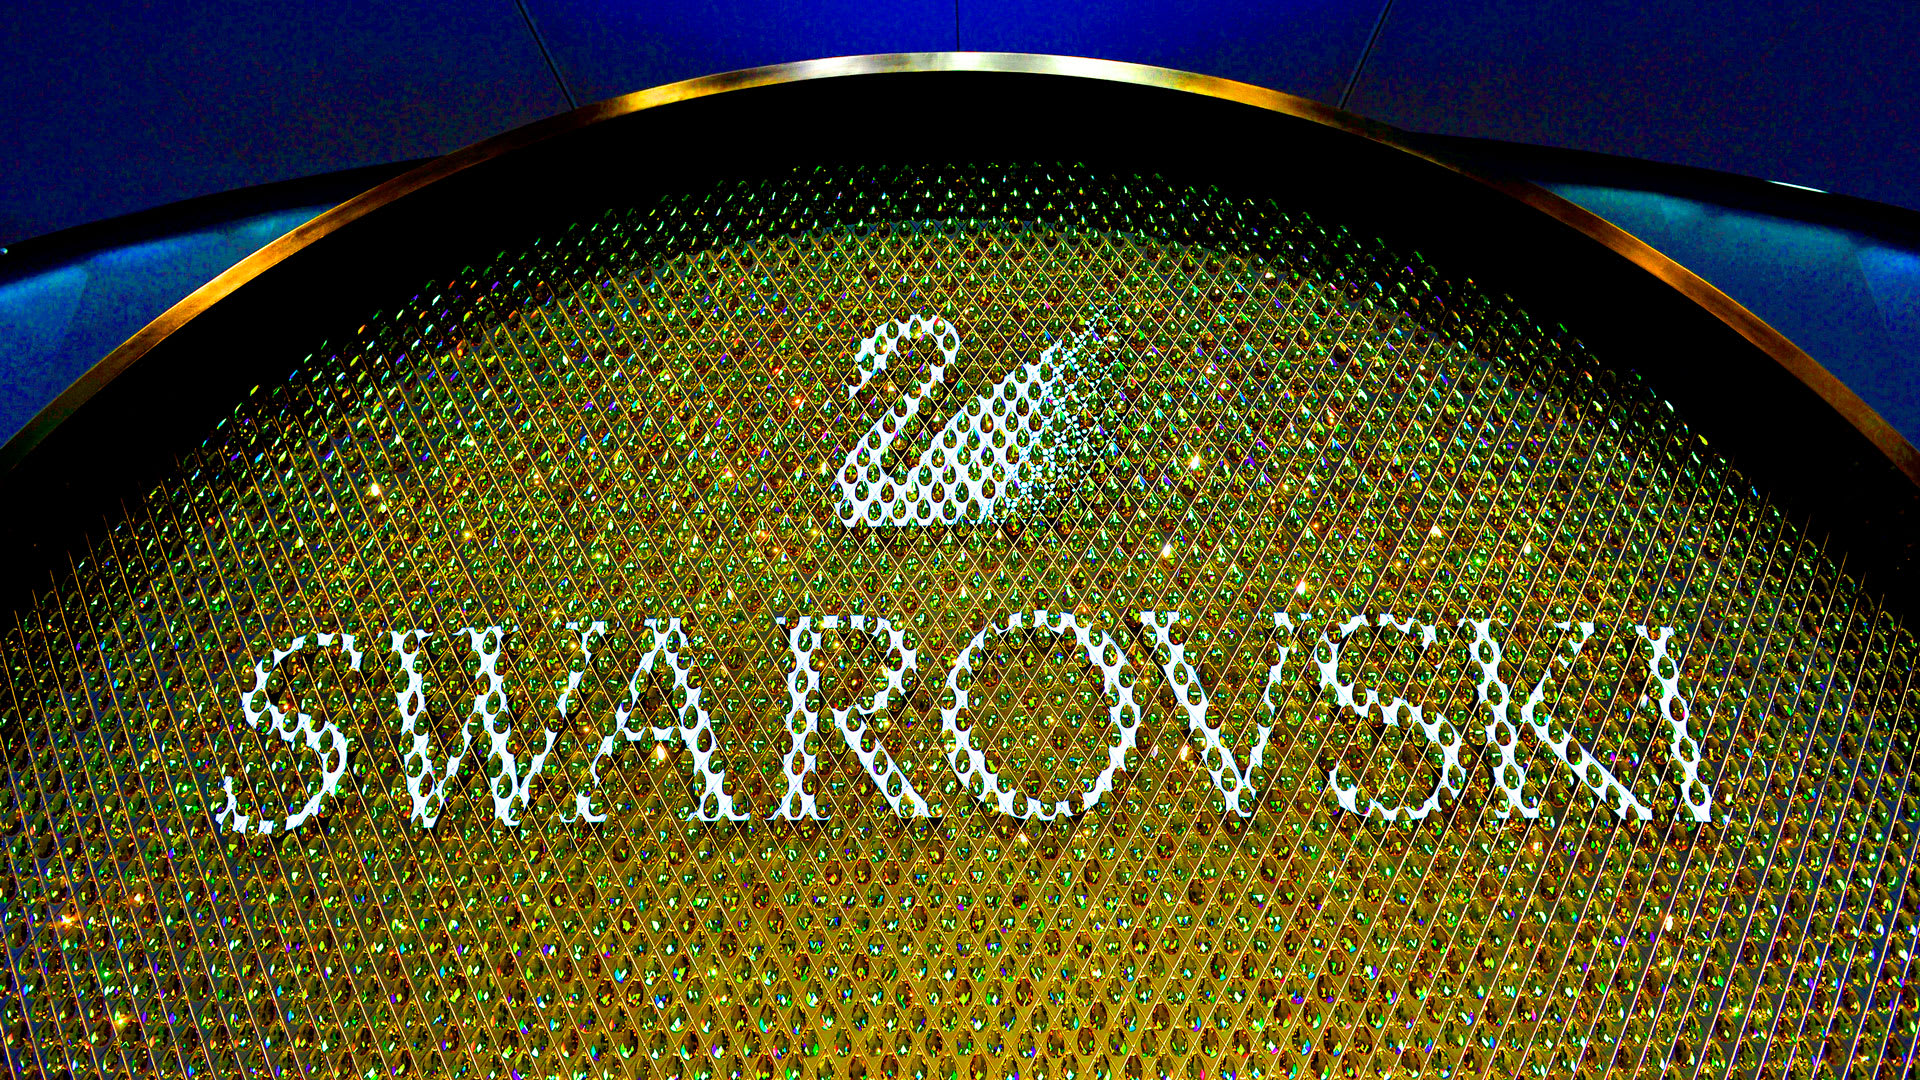 Swarovski delves into man-made gems